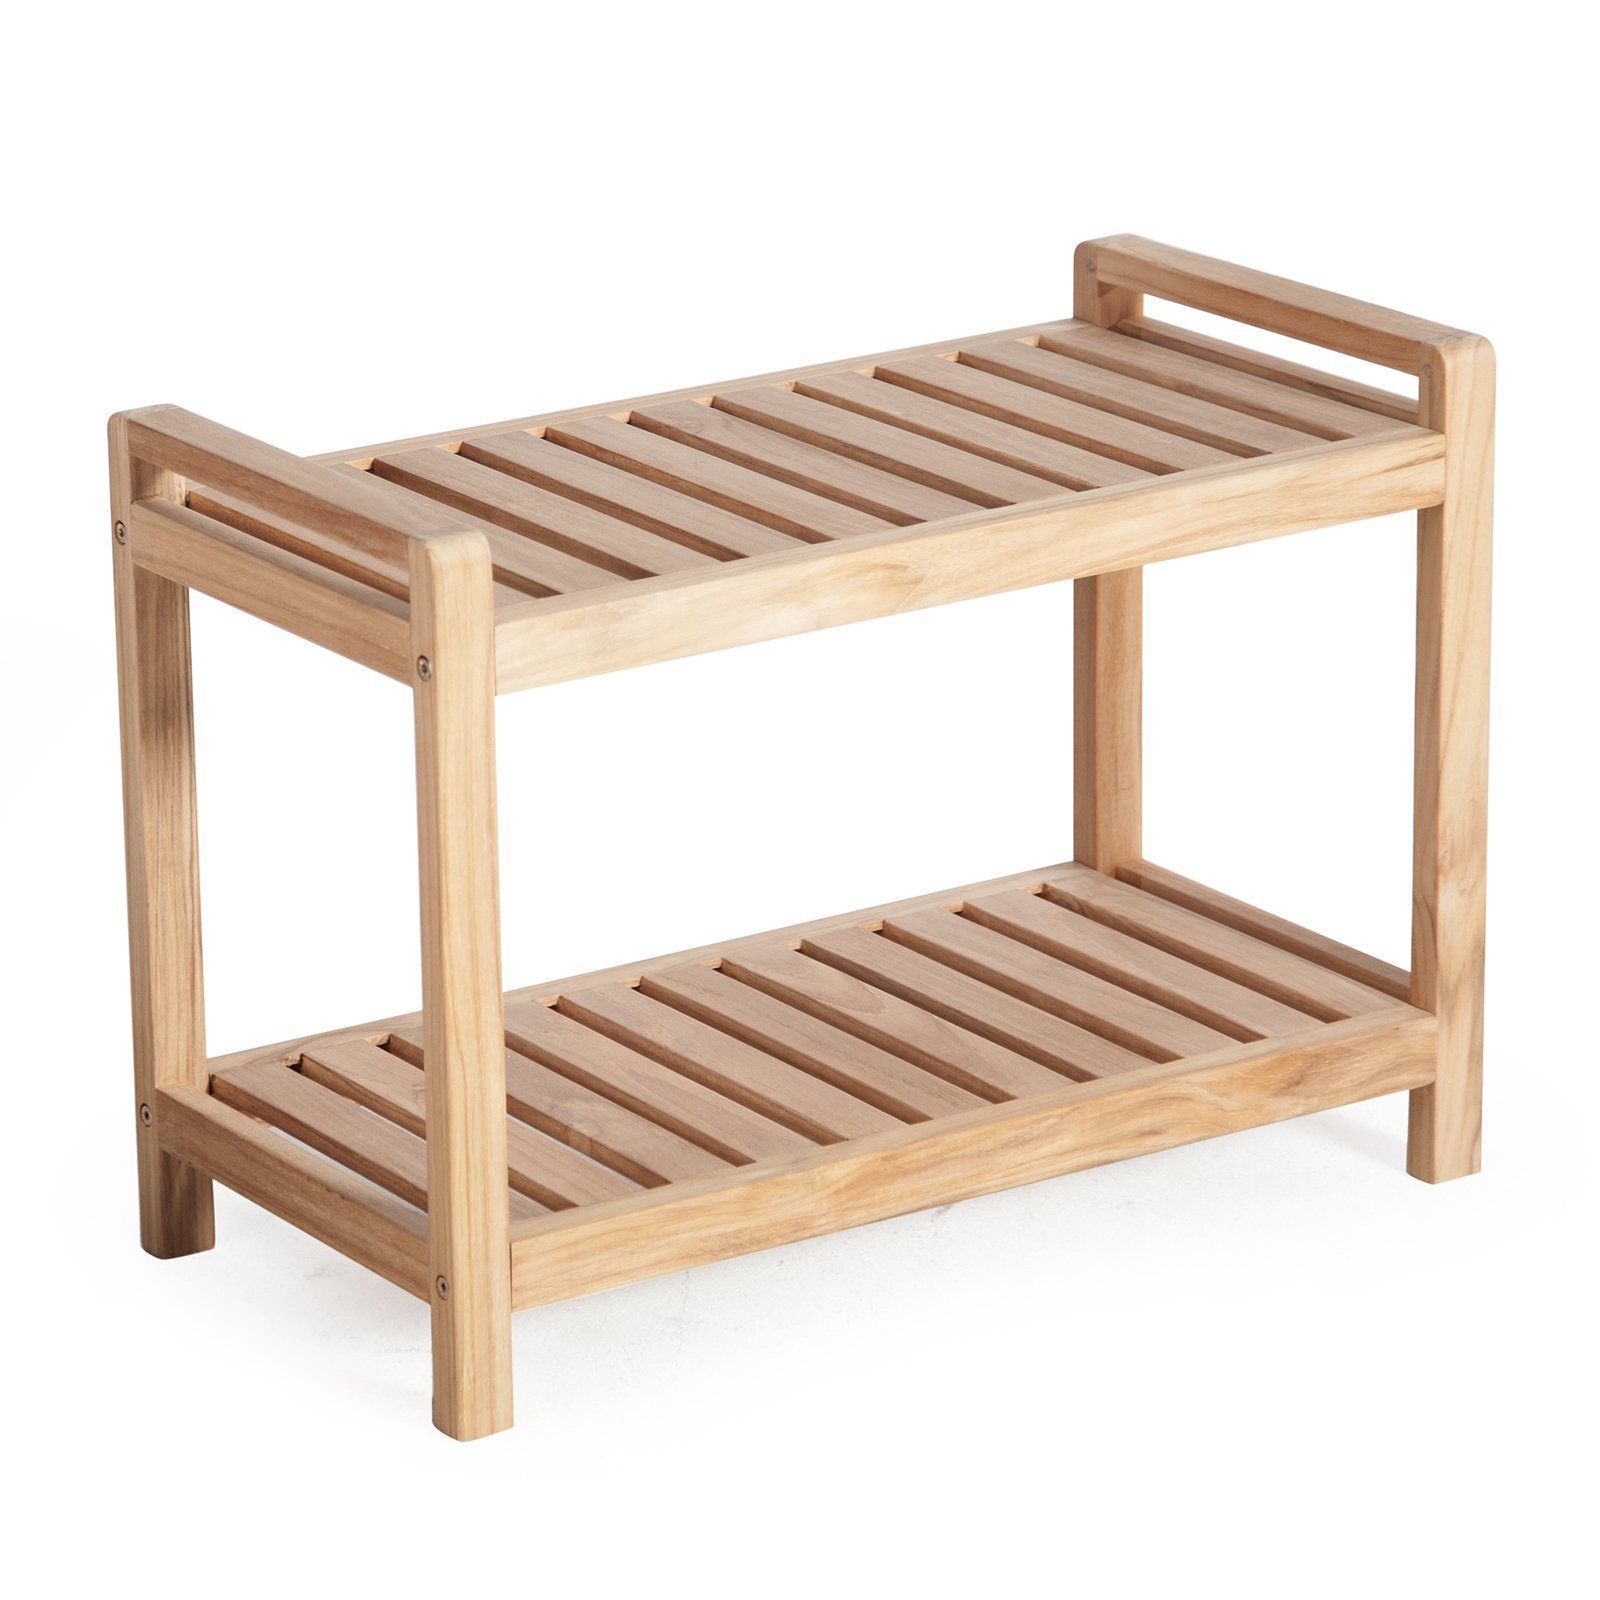 деревянная скамейка для ванной комнаты